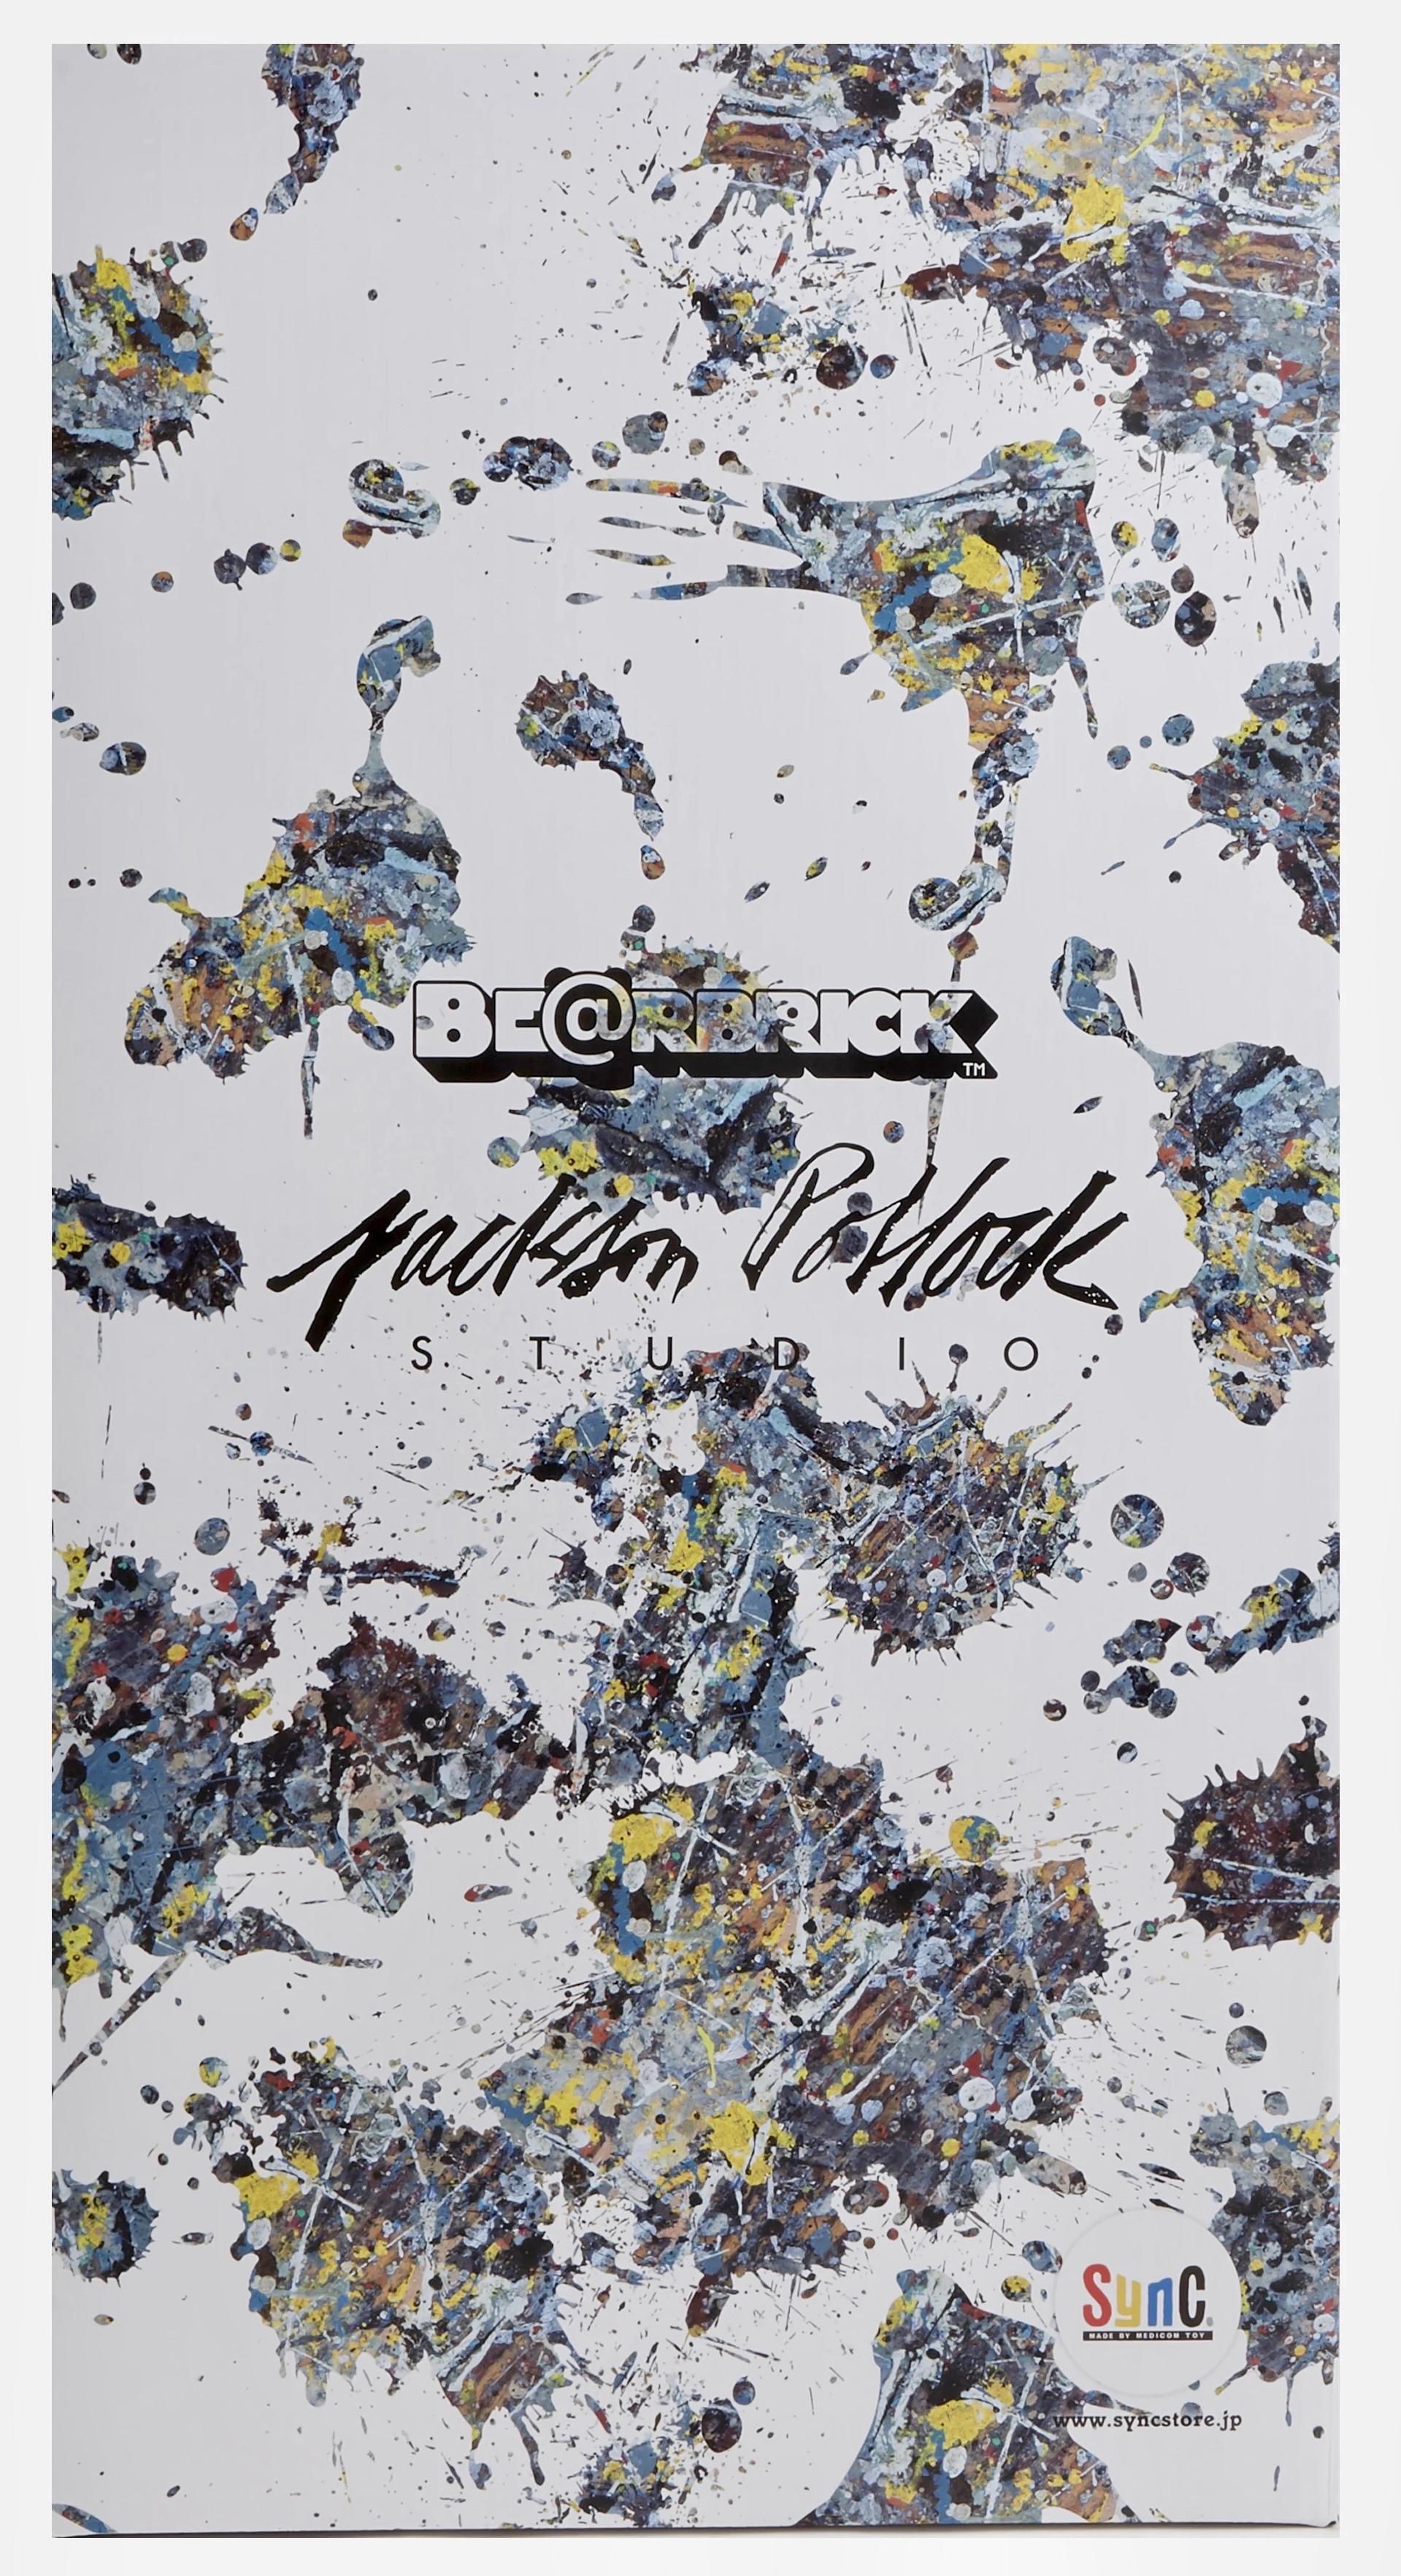 Jackson Pollock 400% & 100% Bearbrick Vinyl Figure (lot de 2) : 
Cette statue de Jackson Pollock en Bearbrick, rare et de grande collection, est éclaboussée de la tête aux pieds par la signature de Pollock. Elle comprend une recréation de la